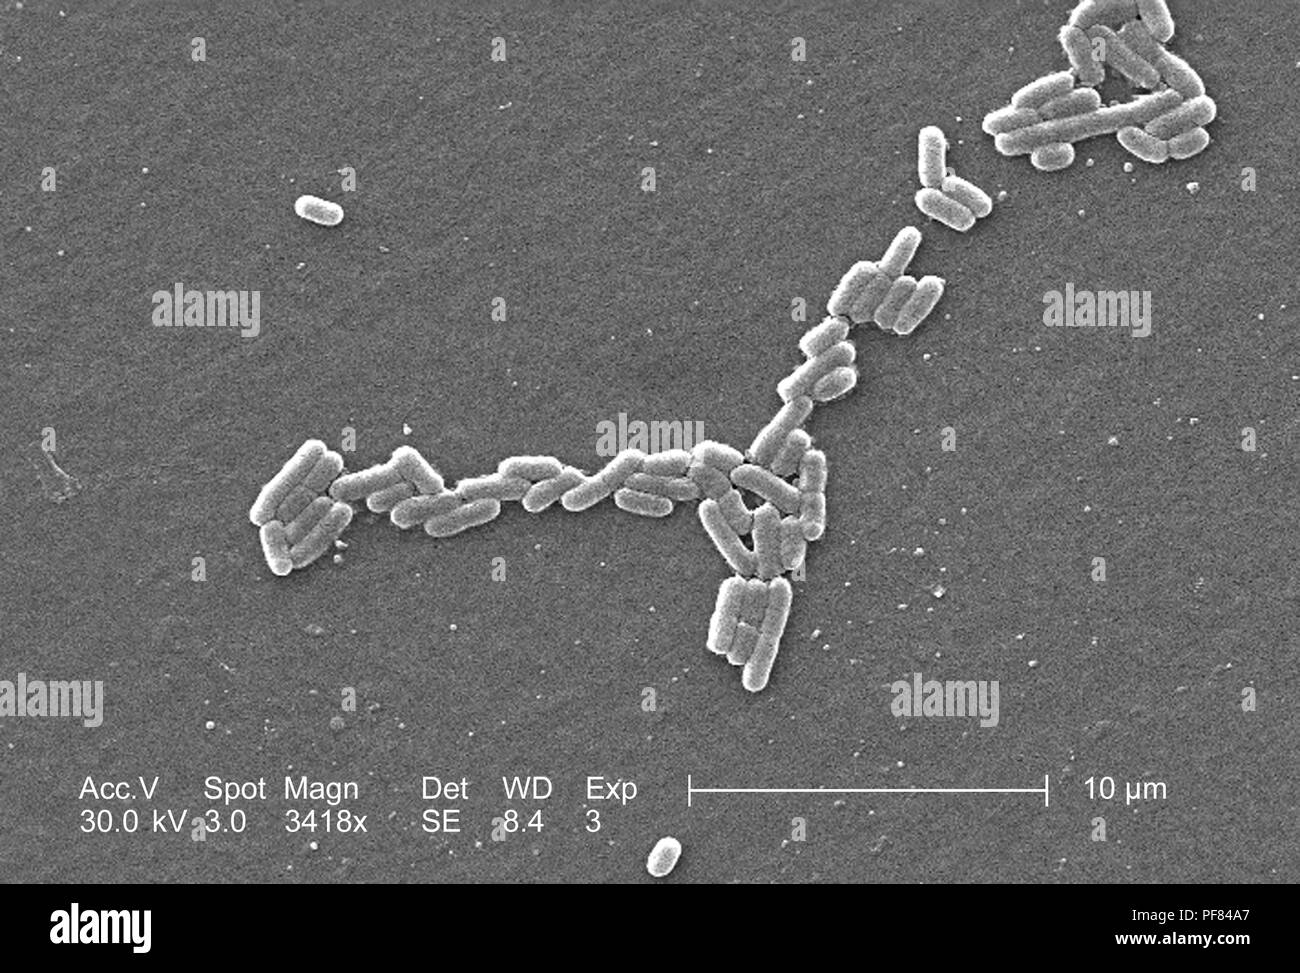 Gram-negativi Batteri Escherichia coli del ceppo O157:H7, ha rivelato nel 3418x di scansione ingrandita al microscopio elettronico (SEM) immagine, 2006. Immagine cortesia di centri per il controllo delle malattie (CDC) / Nazionale Escherichia, Shigella, Vibrio unità di riferimento presso la CDC. () Foto Stock